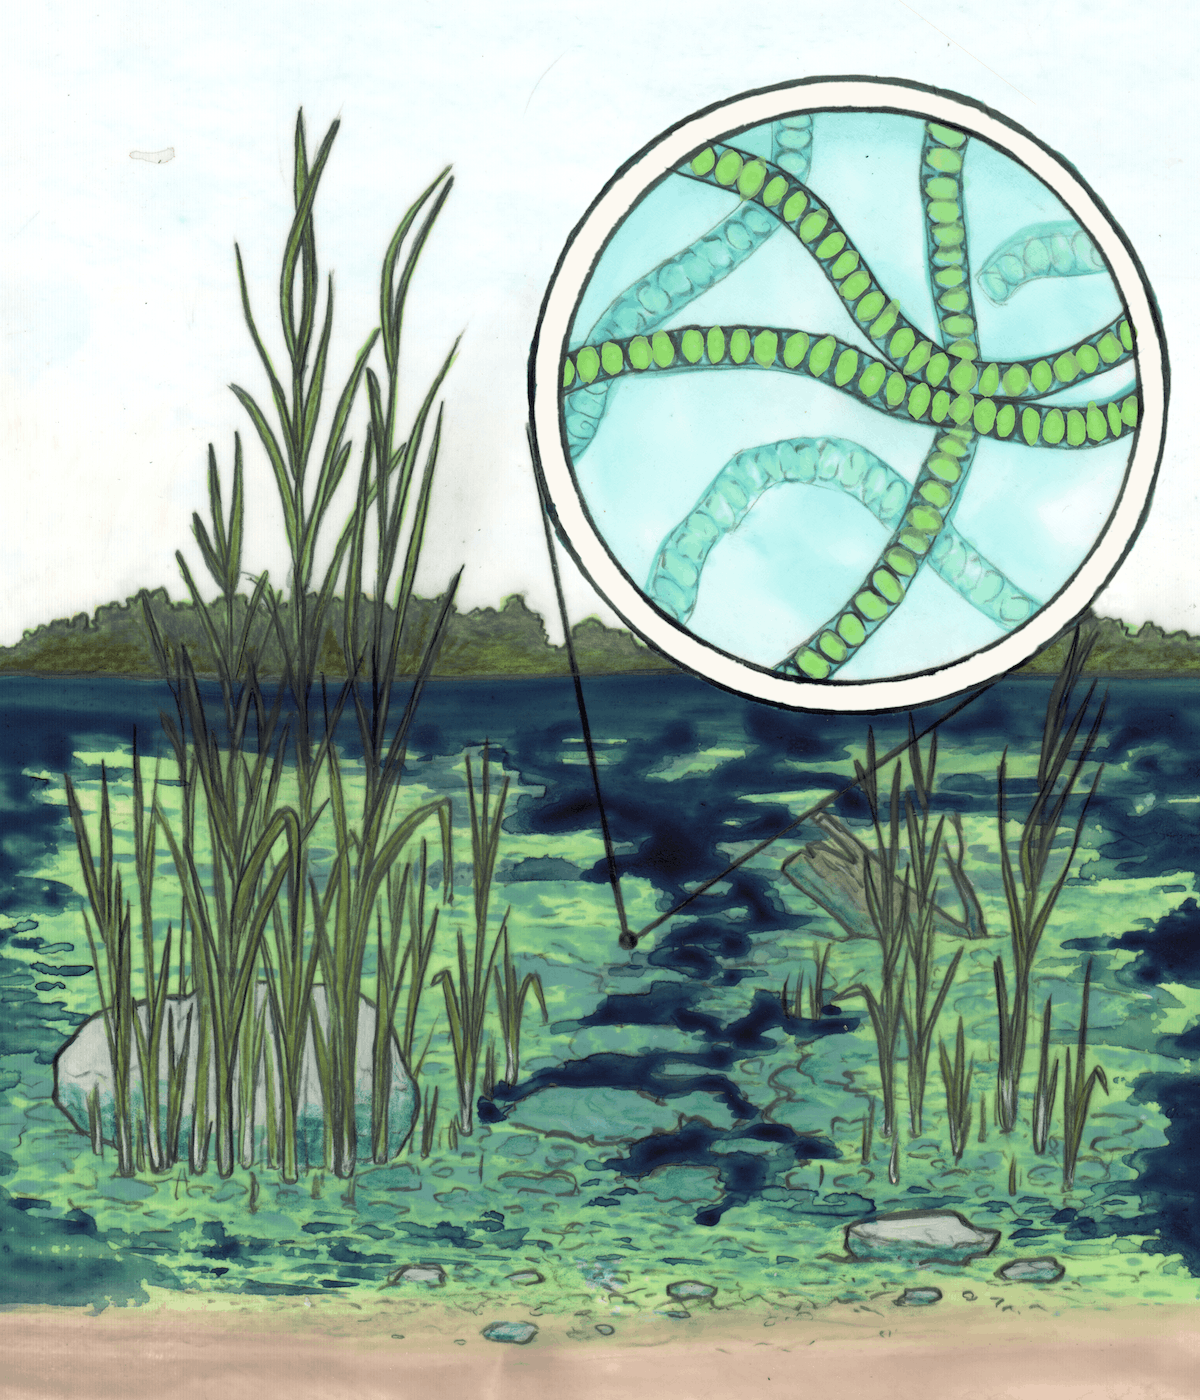 Esquisse d'un plan d'eau indiquant la prolifération d'algues parmi les grandes herbes qui dépassent de l'eau. Des algues filamenteuses sont mises en évidence dans une bulle agrandie.